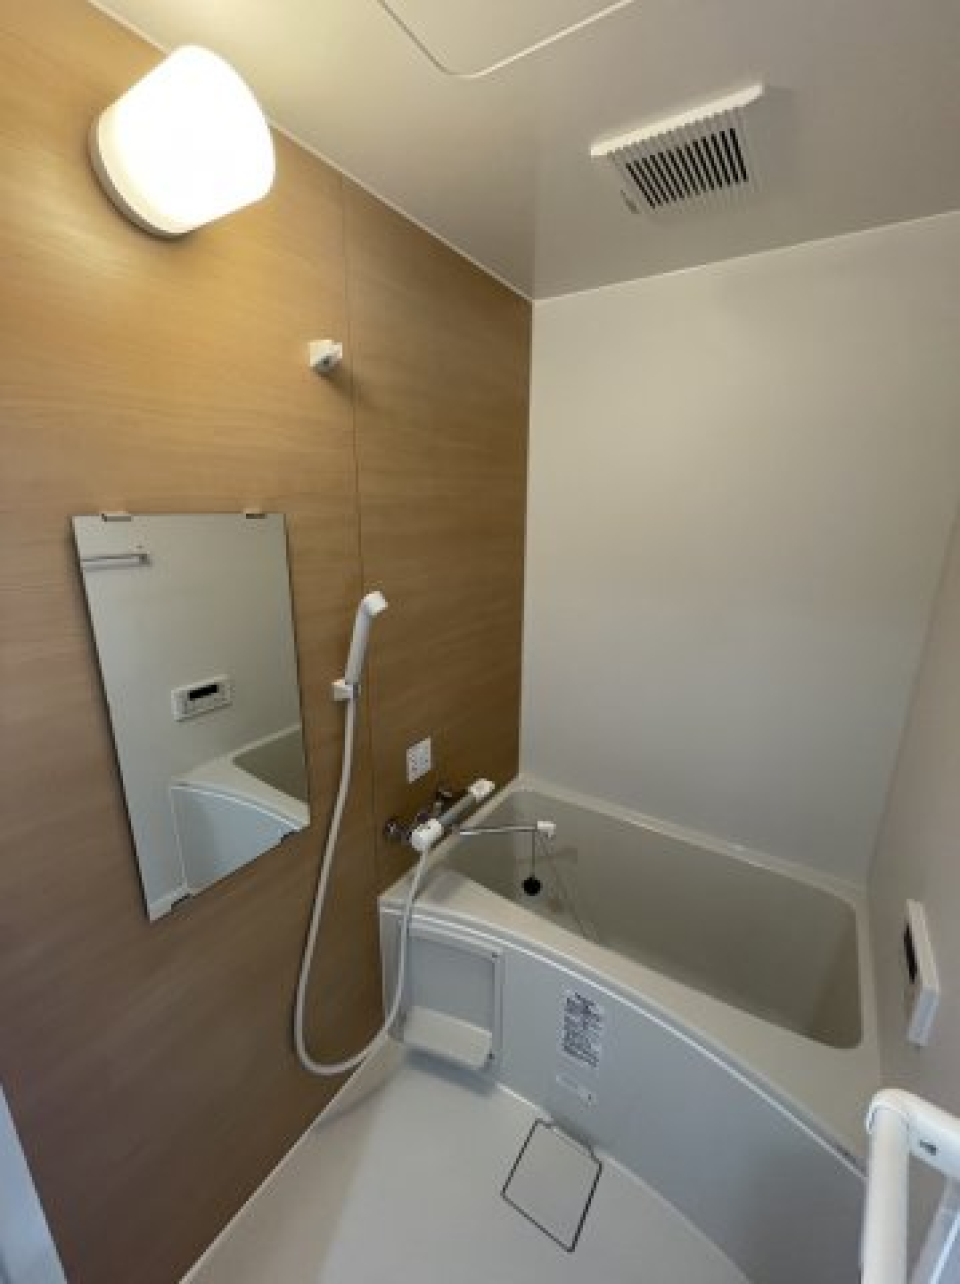 ナチュラルな木目調のパネルが採用された浴室。